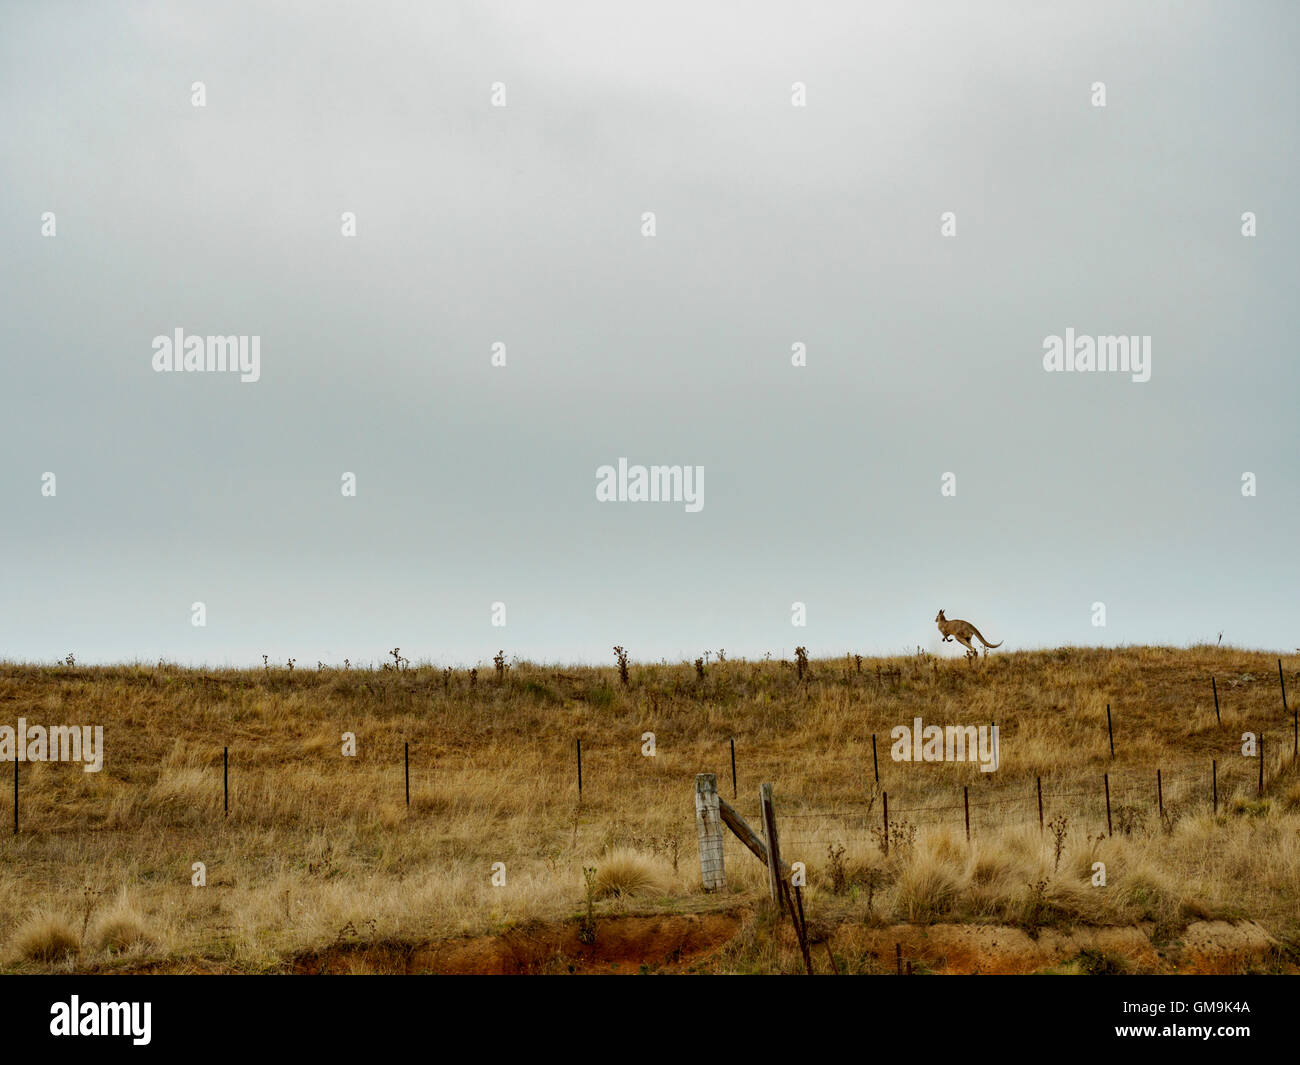 L'Australie, paysage rural avec sauts de kangourou dans l'herbe Banque D'Images